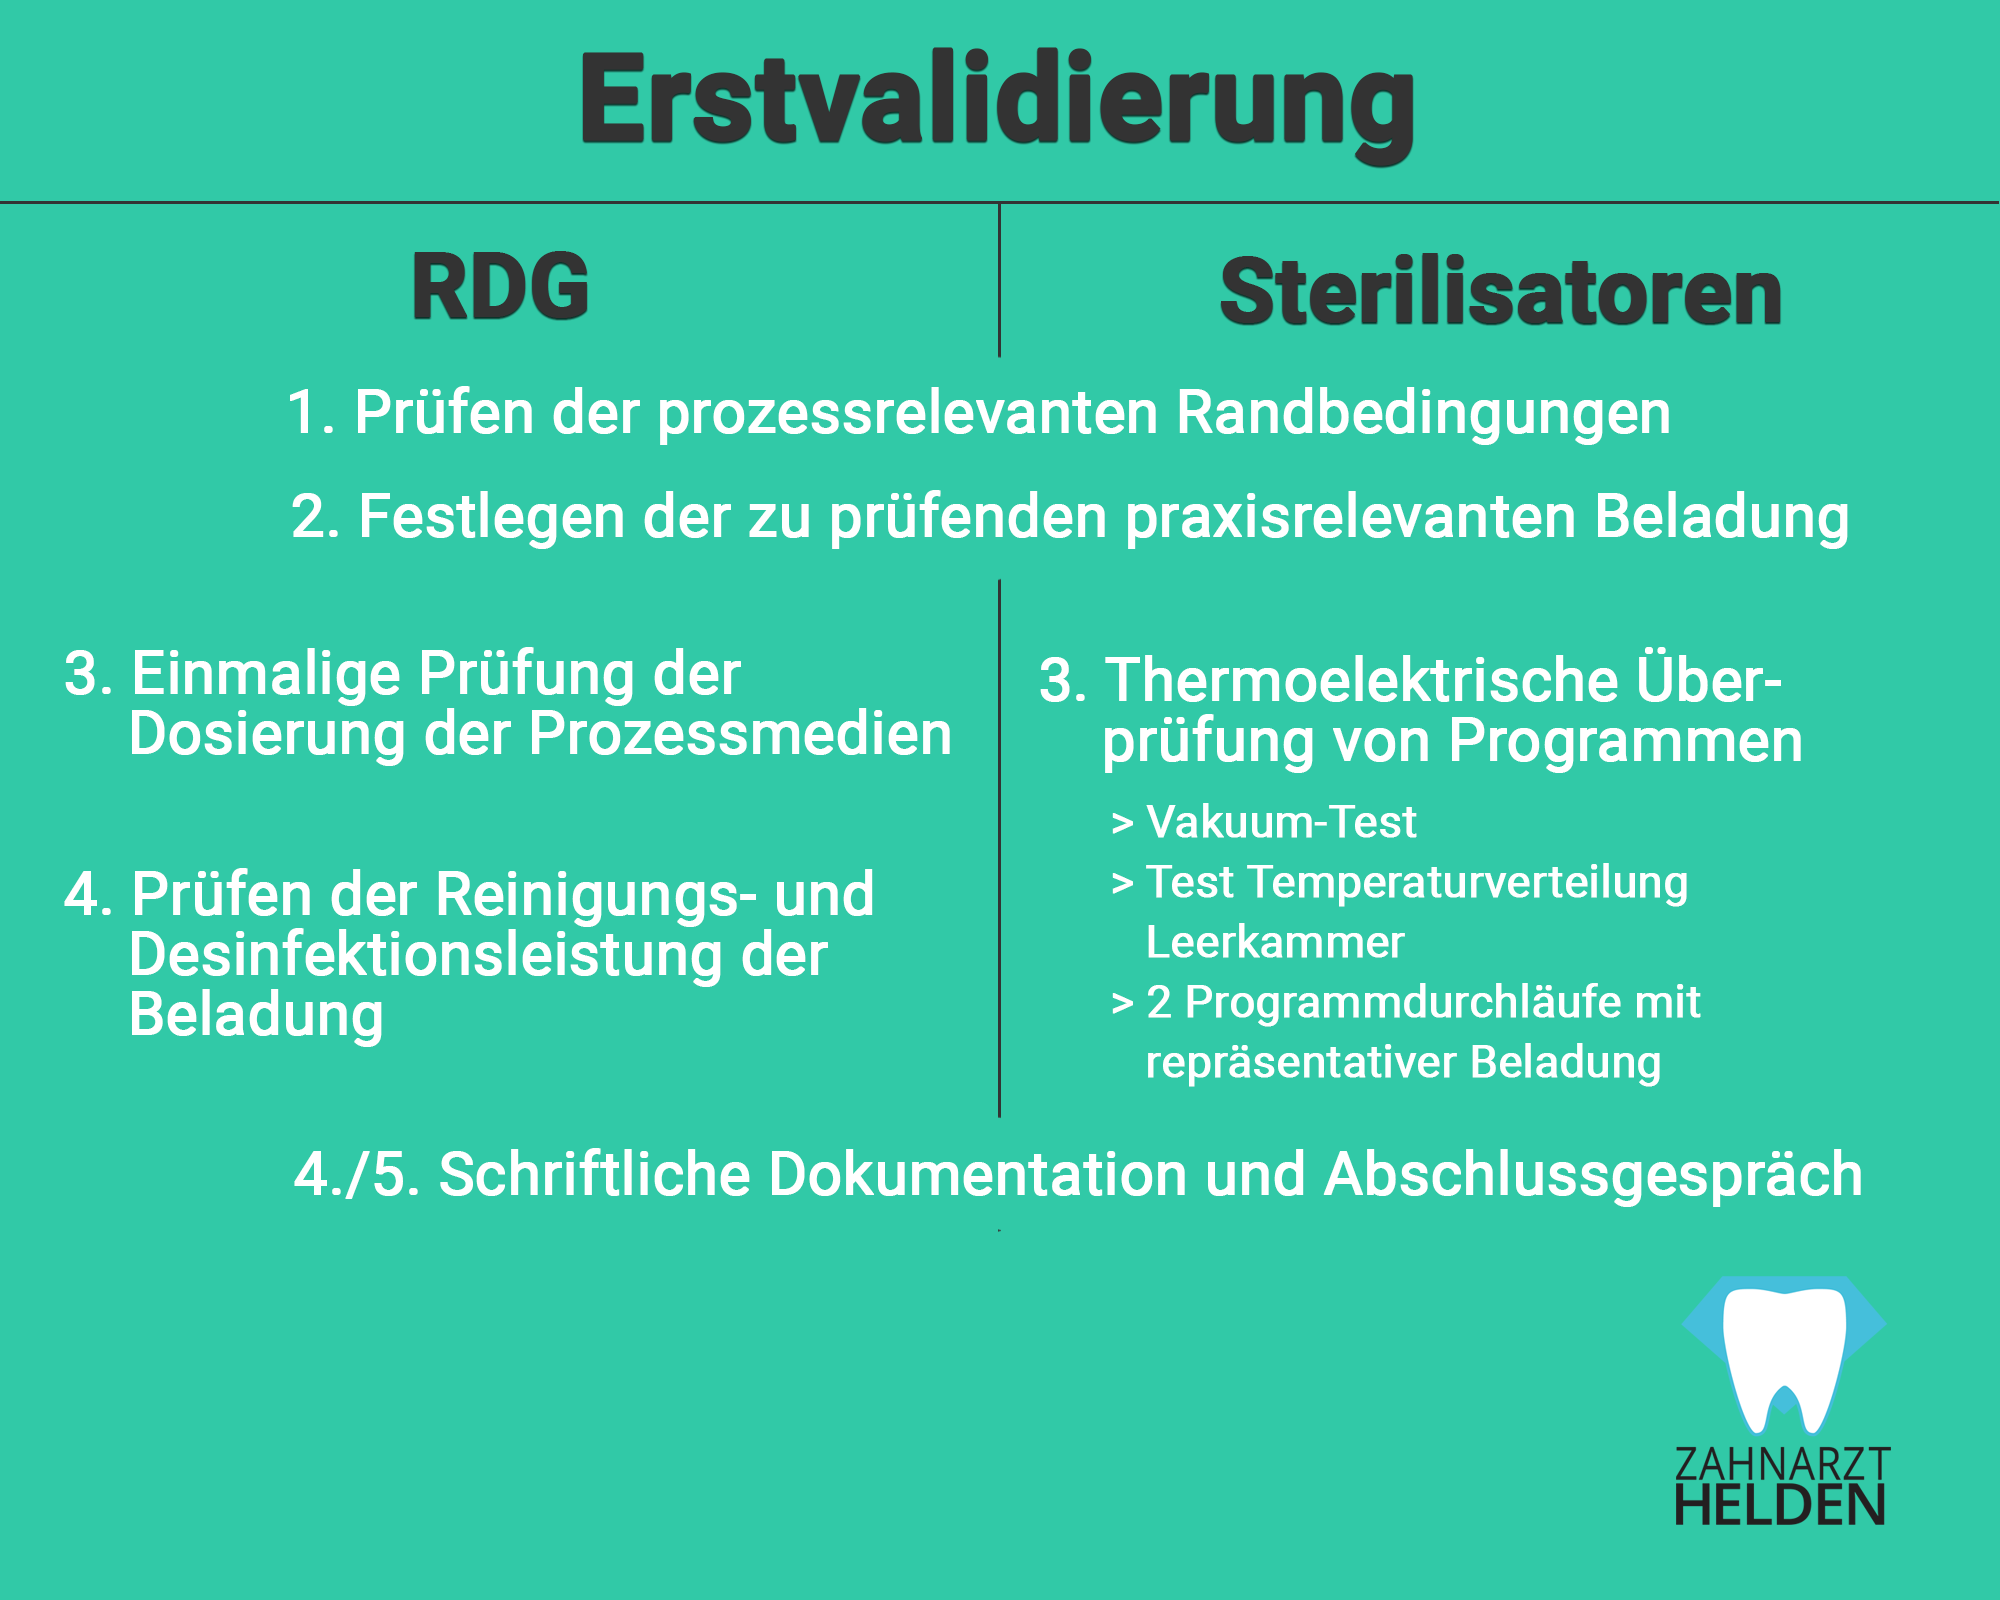 bestandteile-erstvalidierung-rdg-sterilisatoren